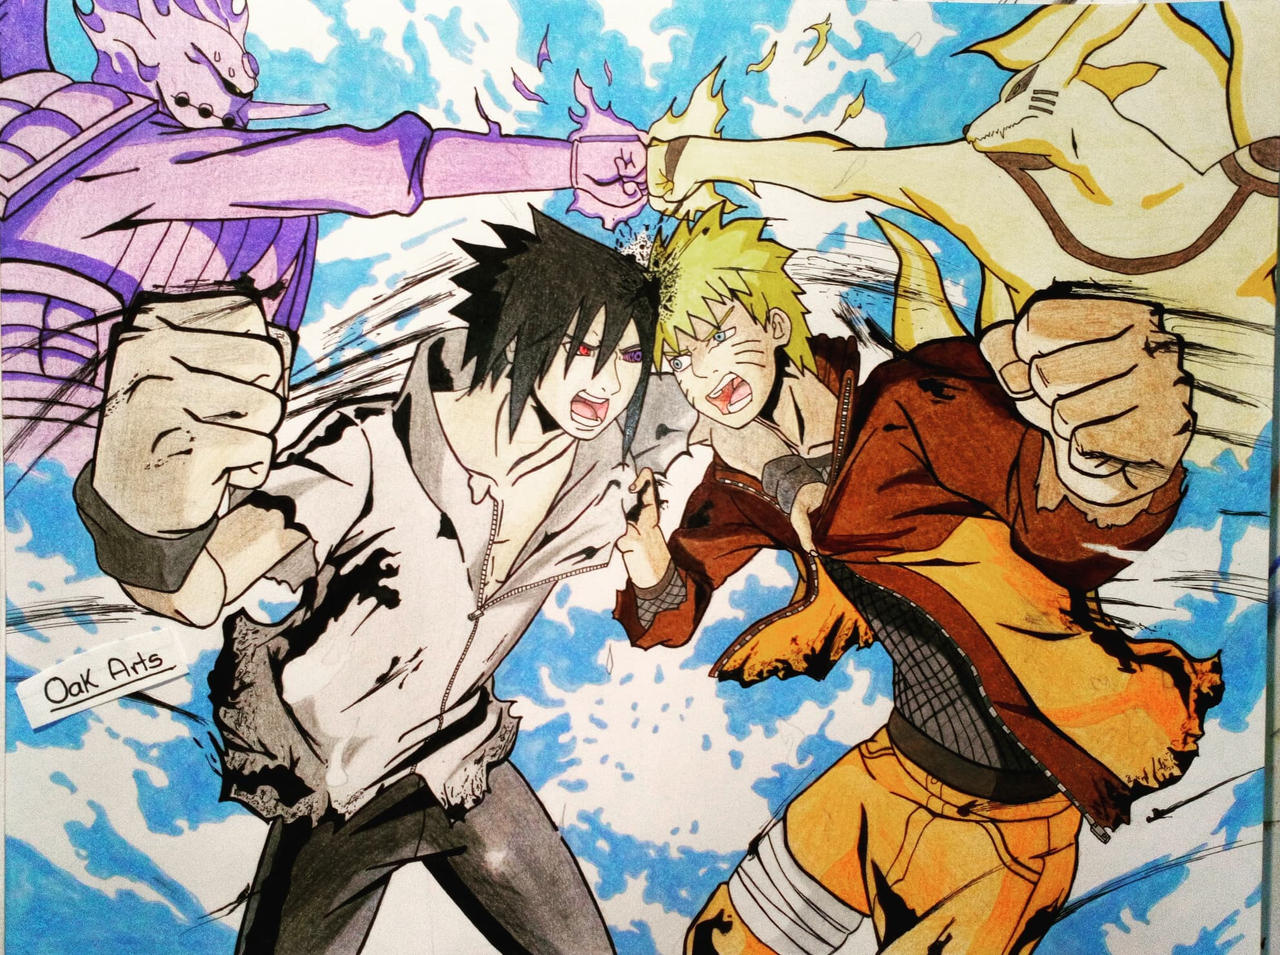 Sasuke Uchiha Naruto Uzumaki Naruto Shippuden: Naruto vs. Sasuke